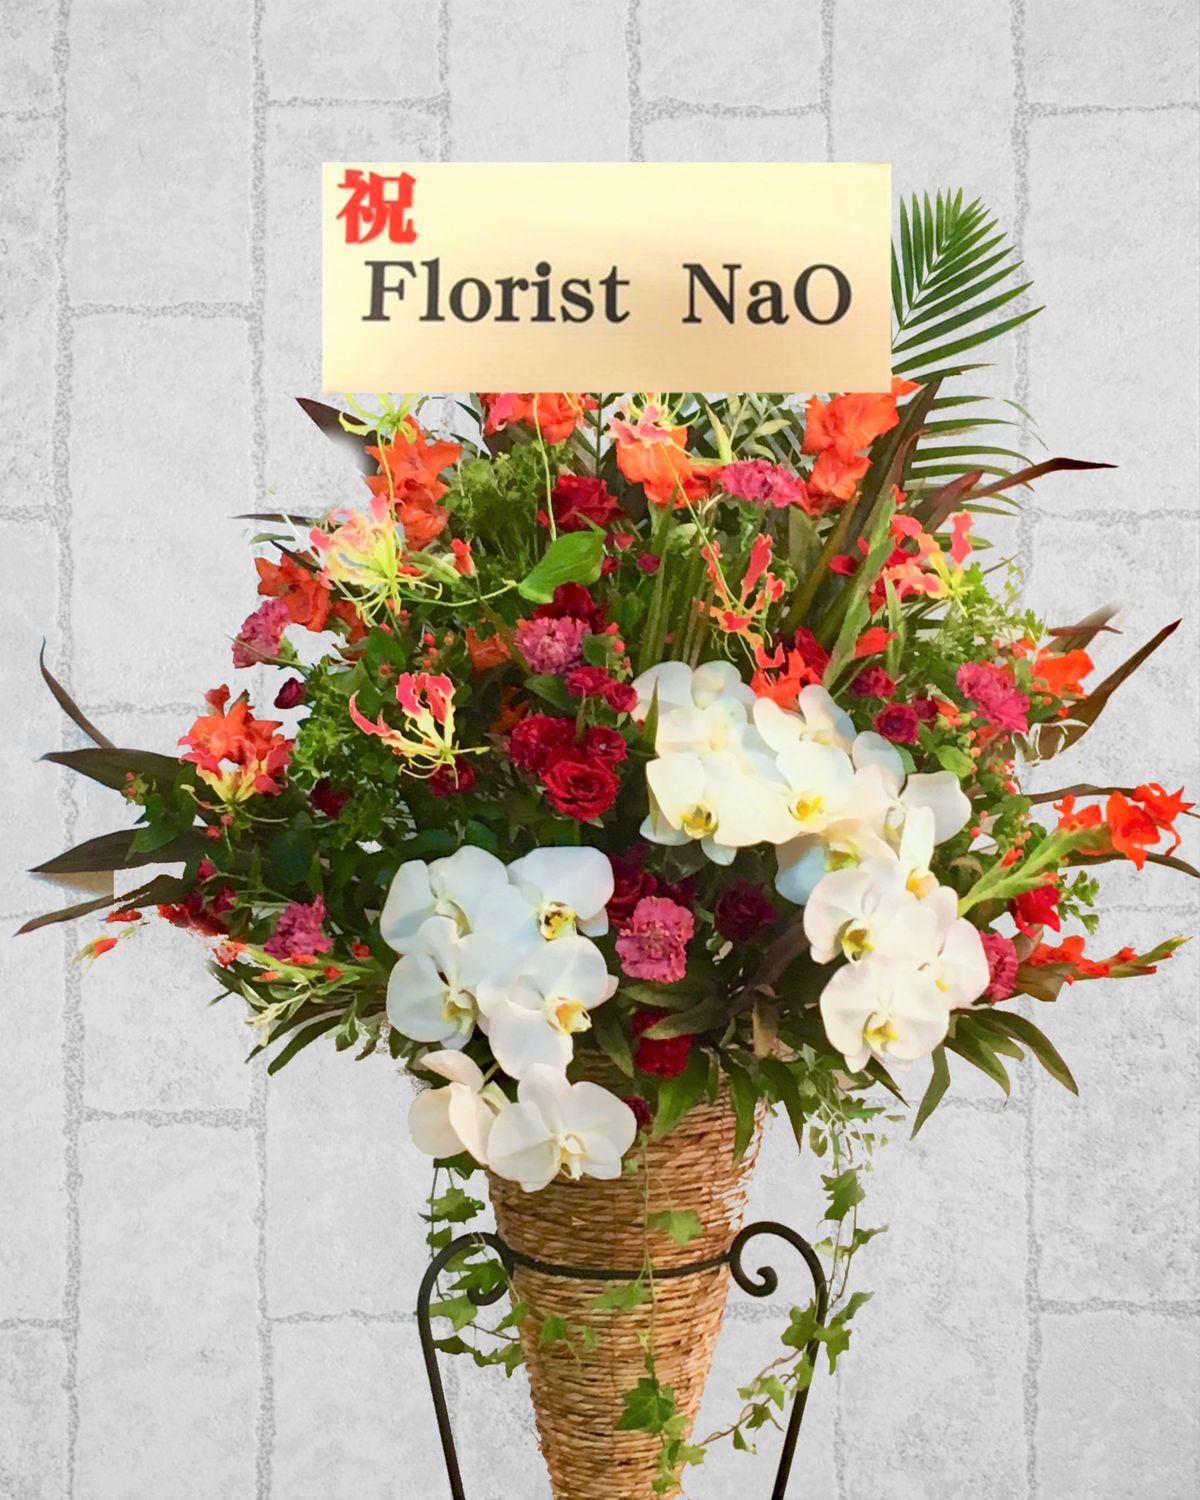 スタンド花 横浜の花屋florist Naoは無料配達 関内 みなとみらいなど配達実績多数